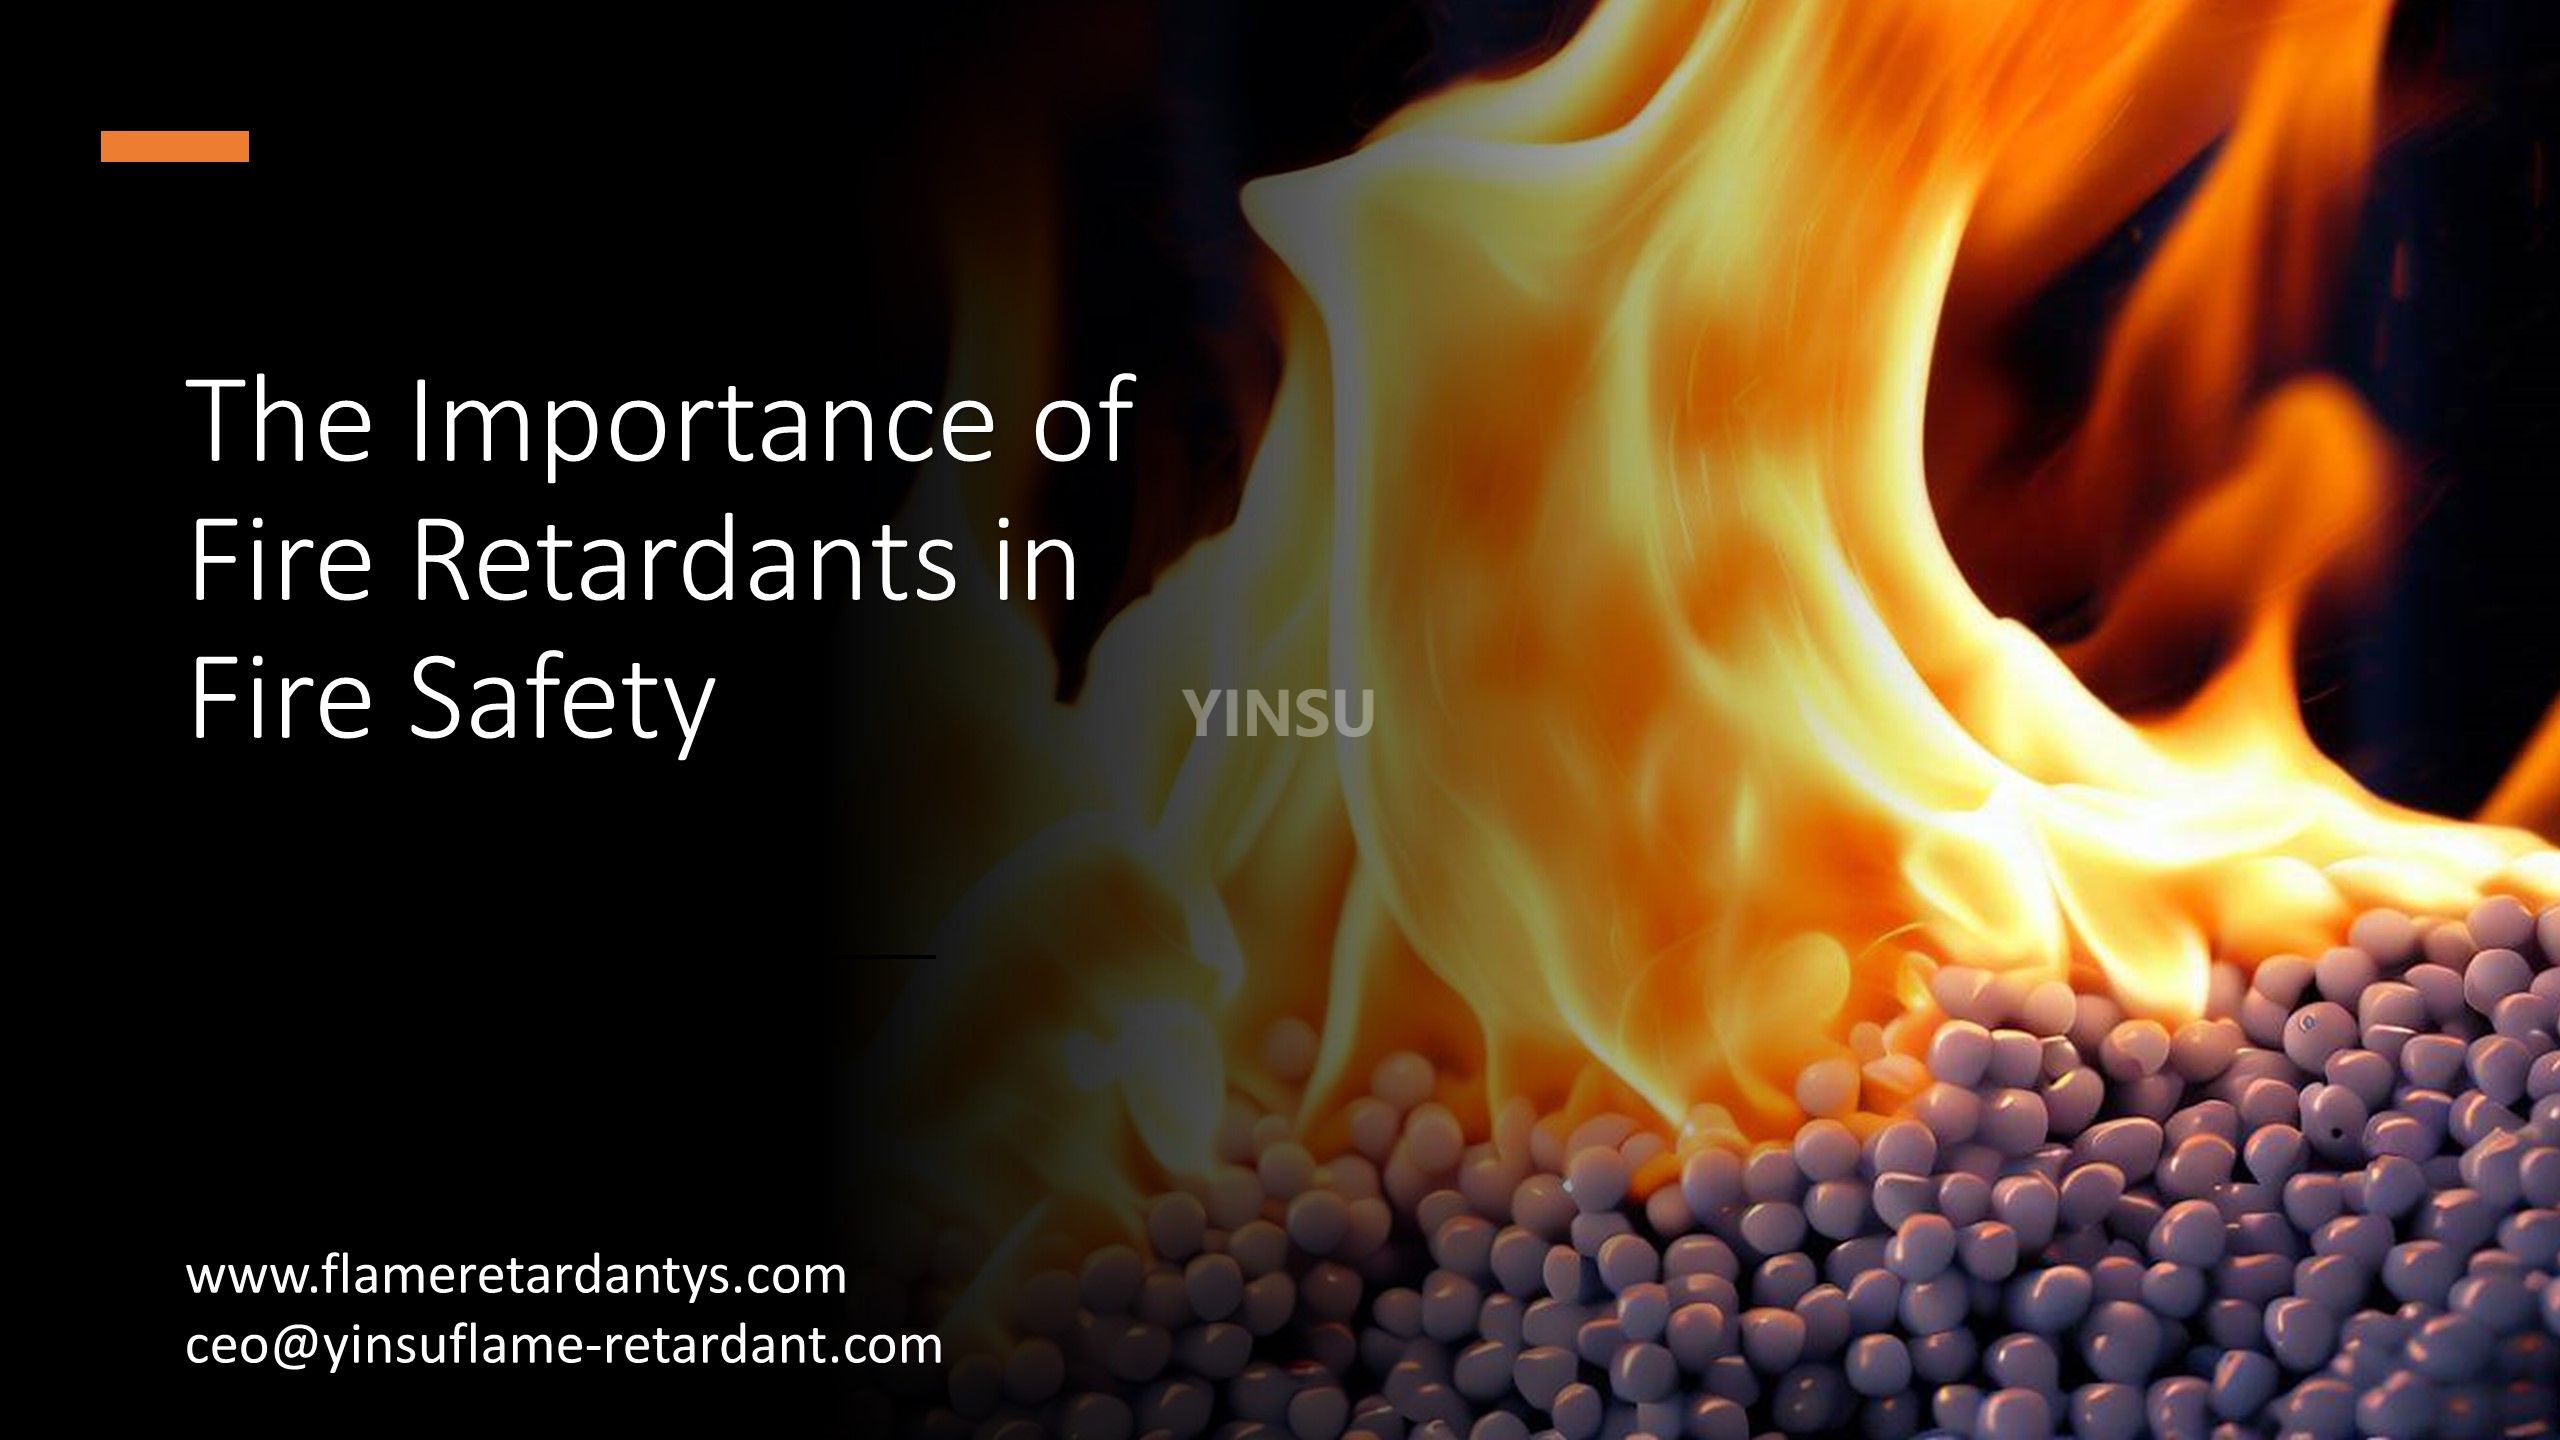 L'importance des produits ignifuges dans la sécurité incendie